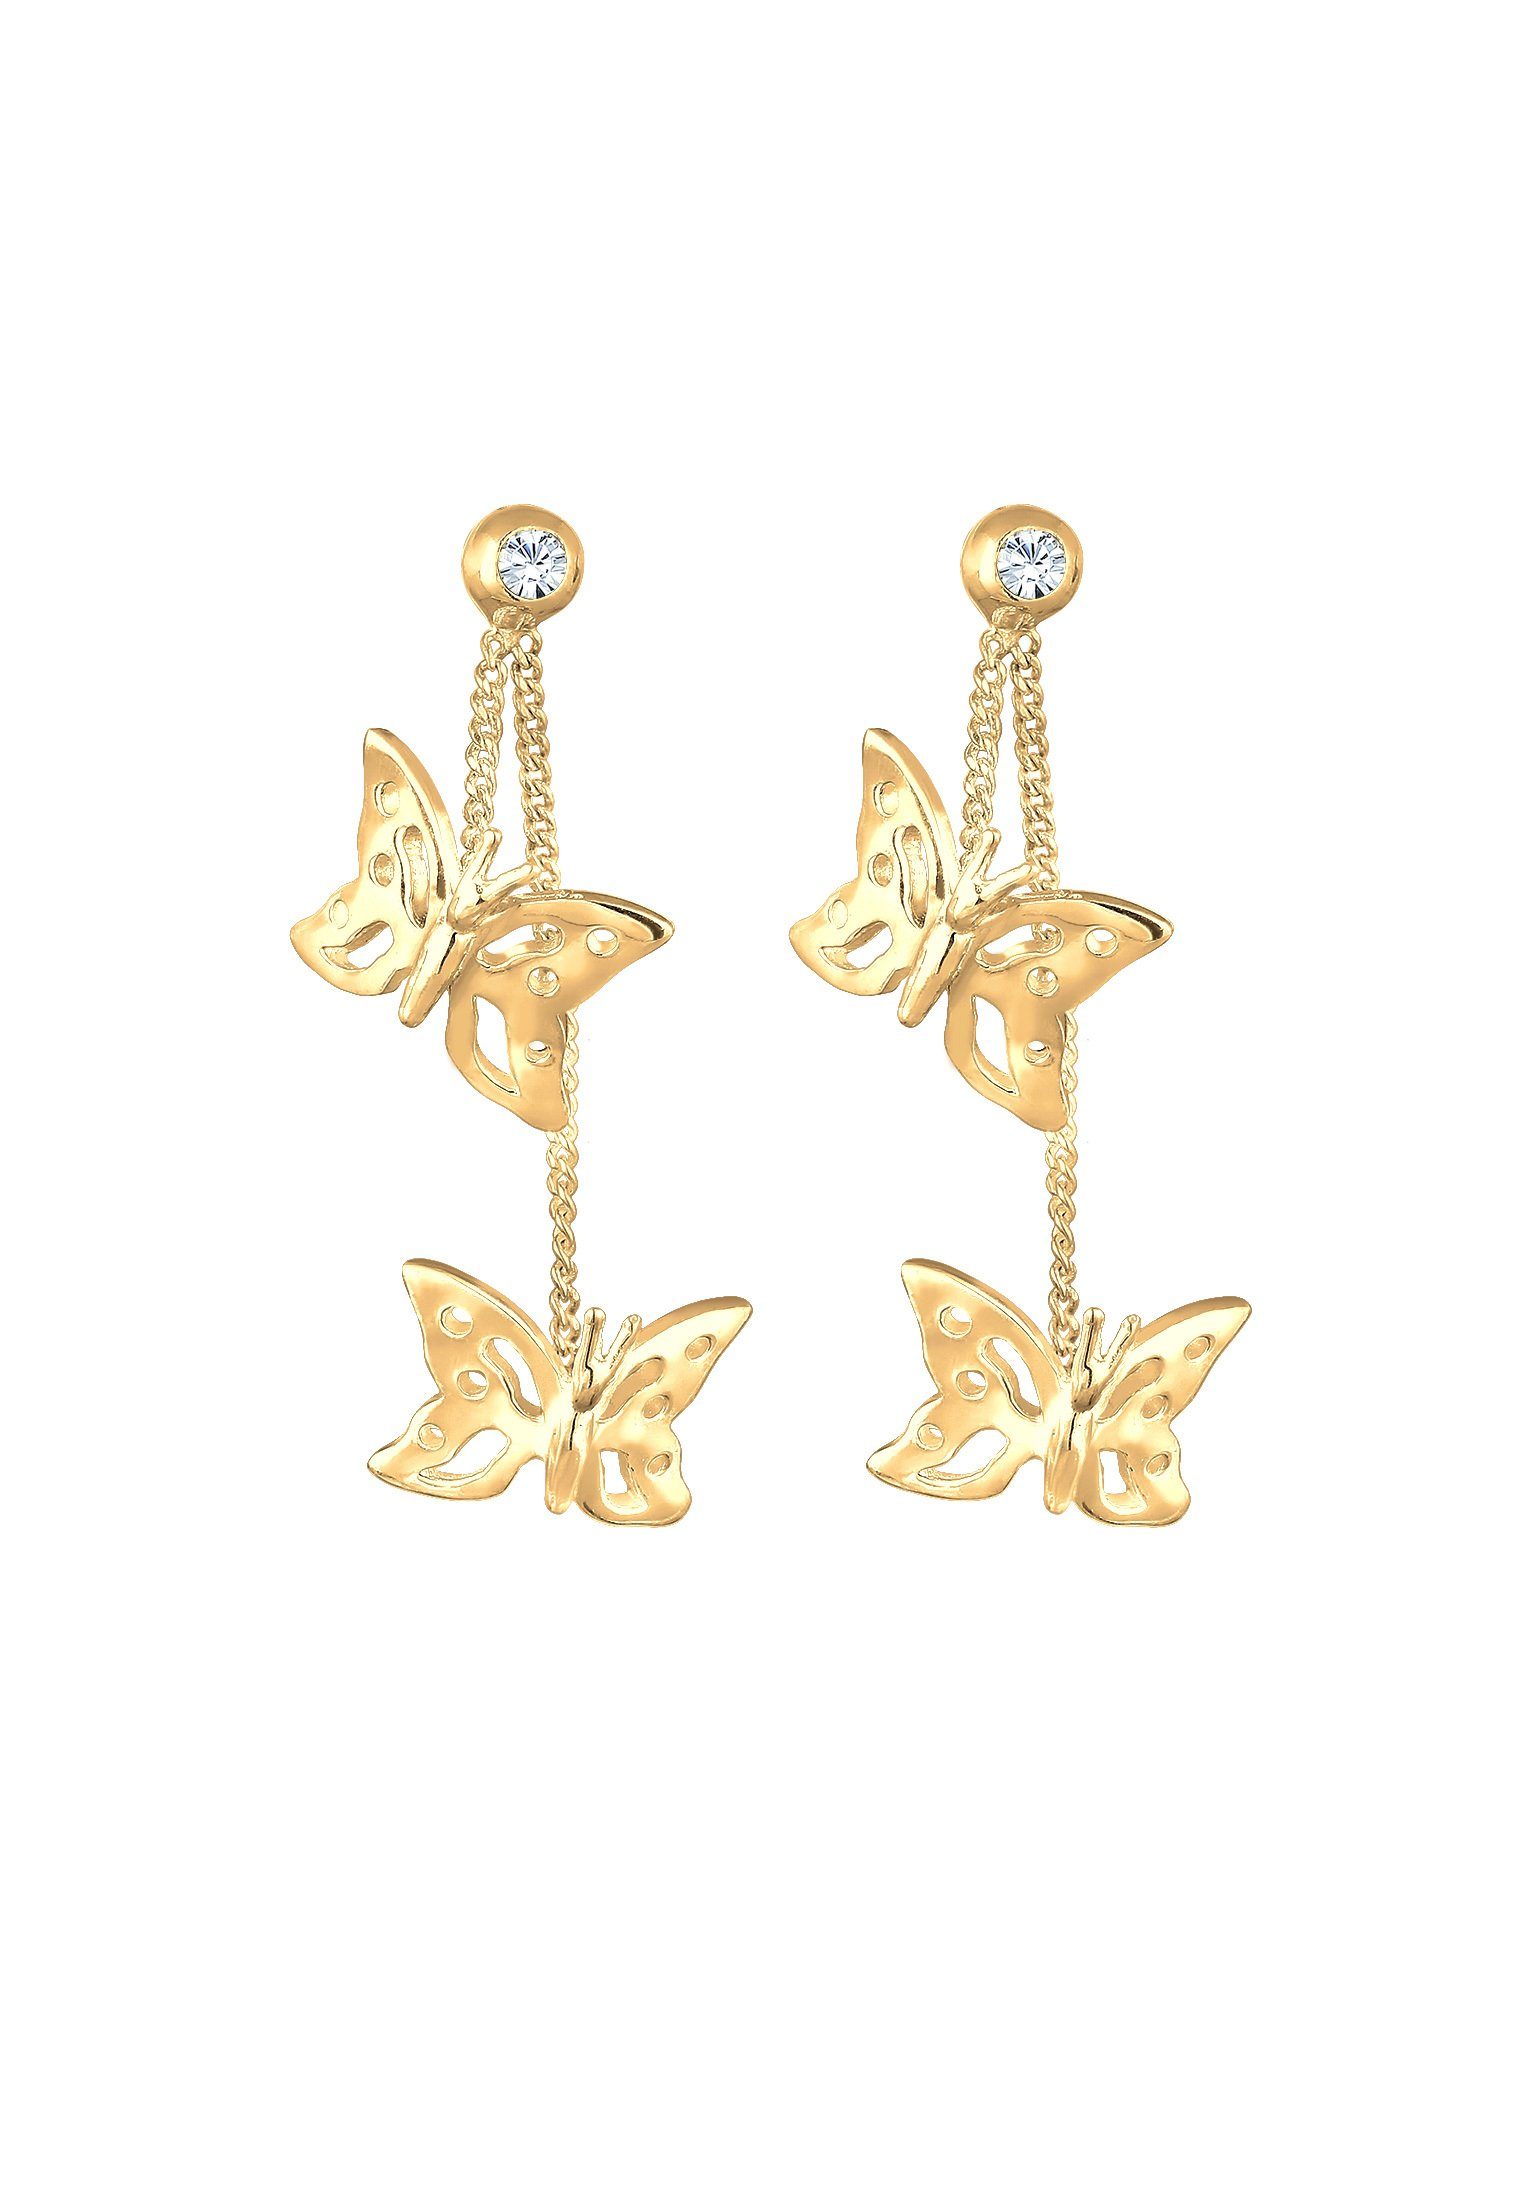 Elli Silber Schmetterling Natur Gold Paar Ohrhänger 925, Schmetterling Kristalle